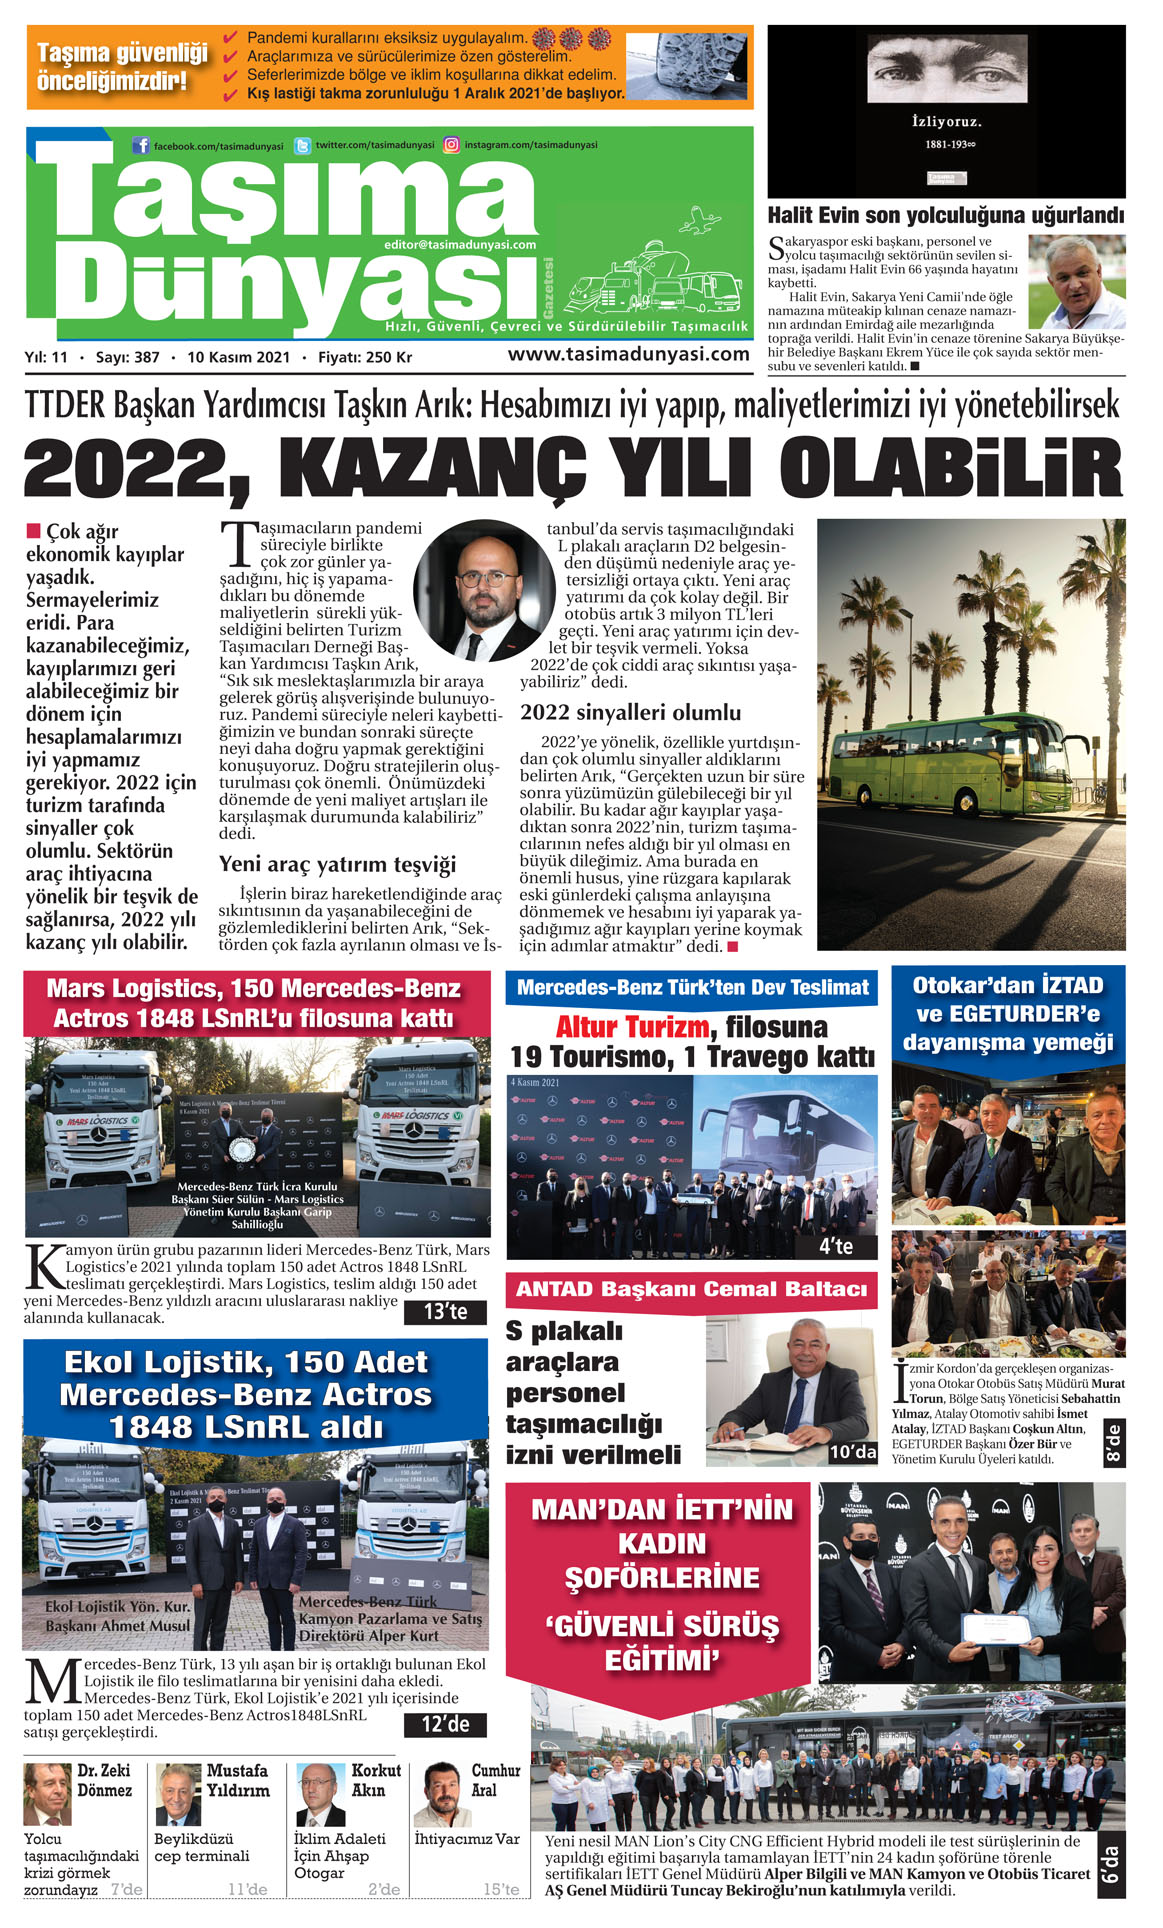 Taşıma Dünyası Gazetesi - 09.11.2021 Manşeti